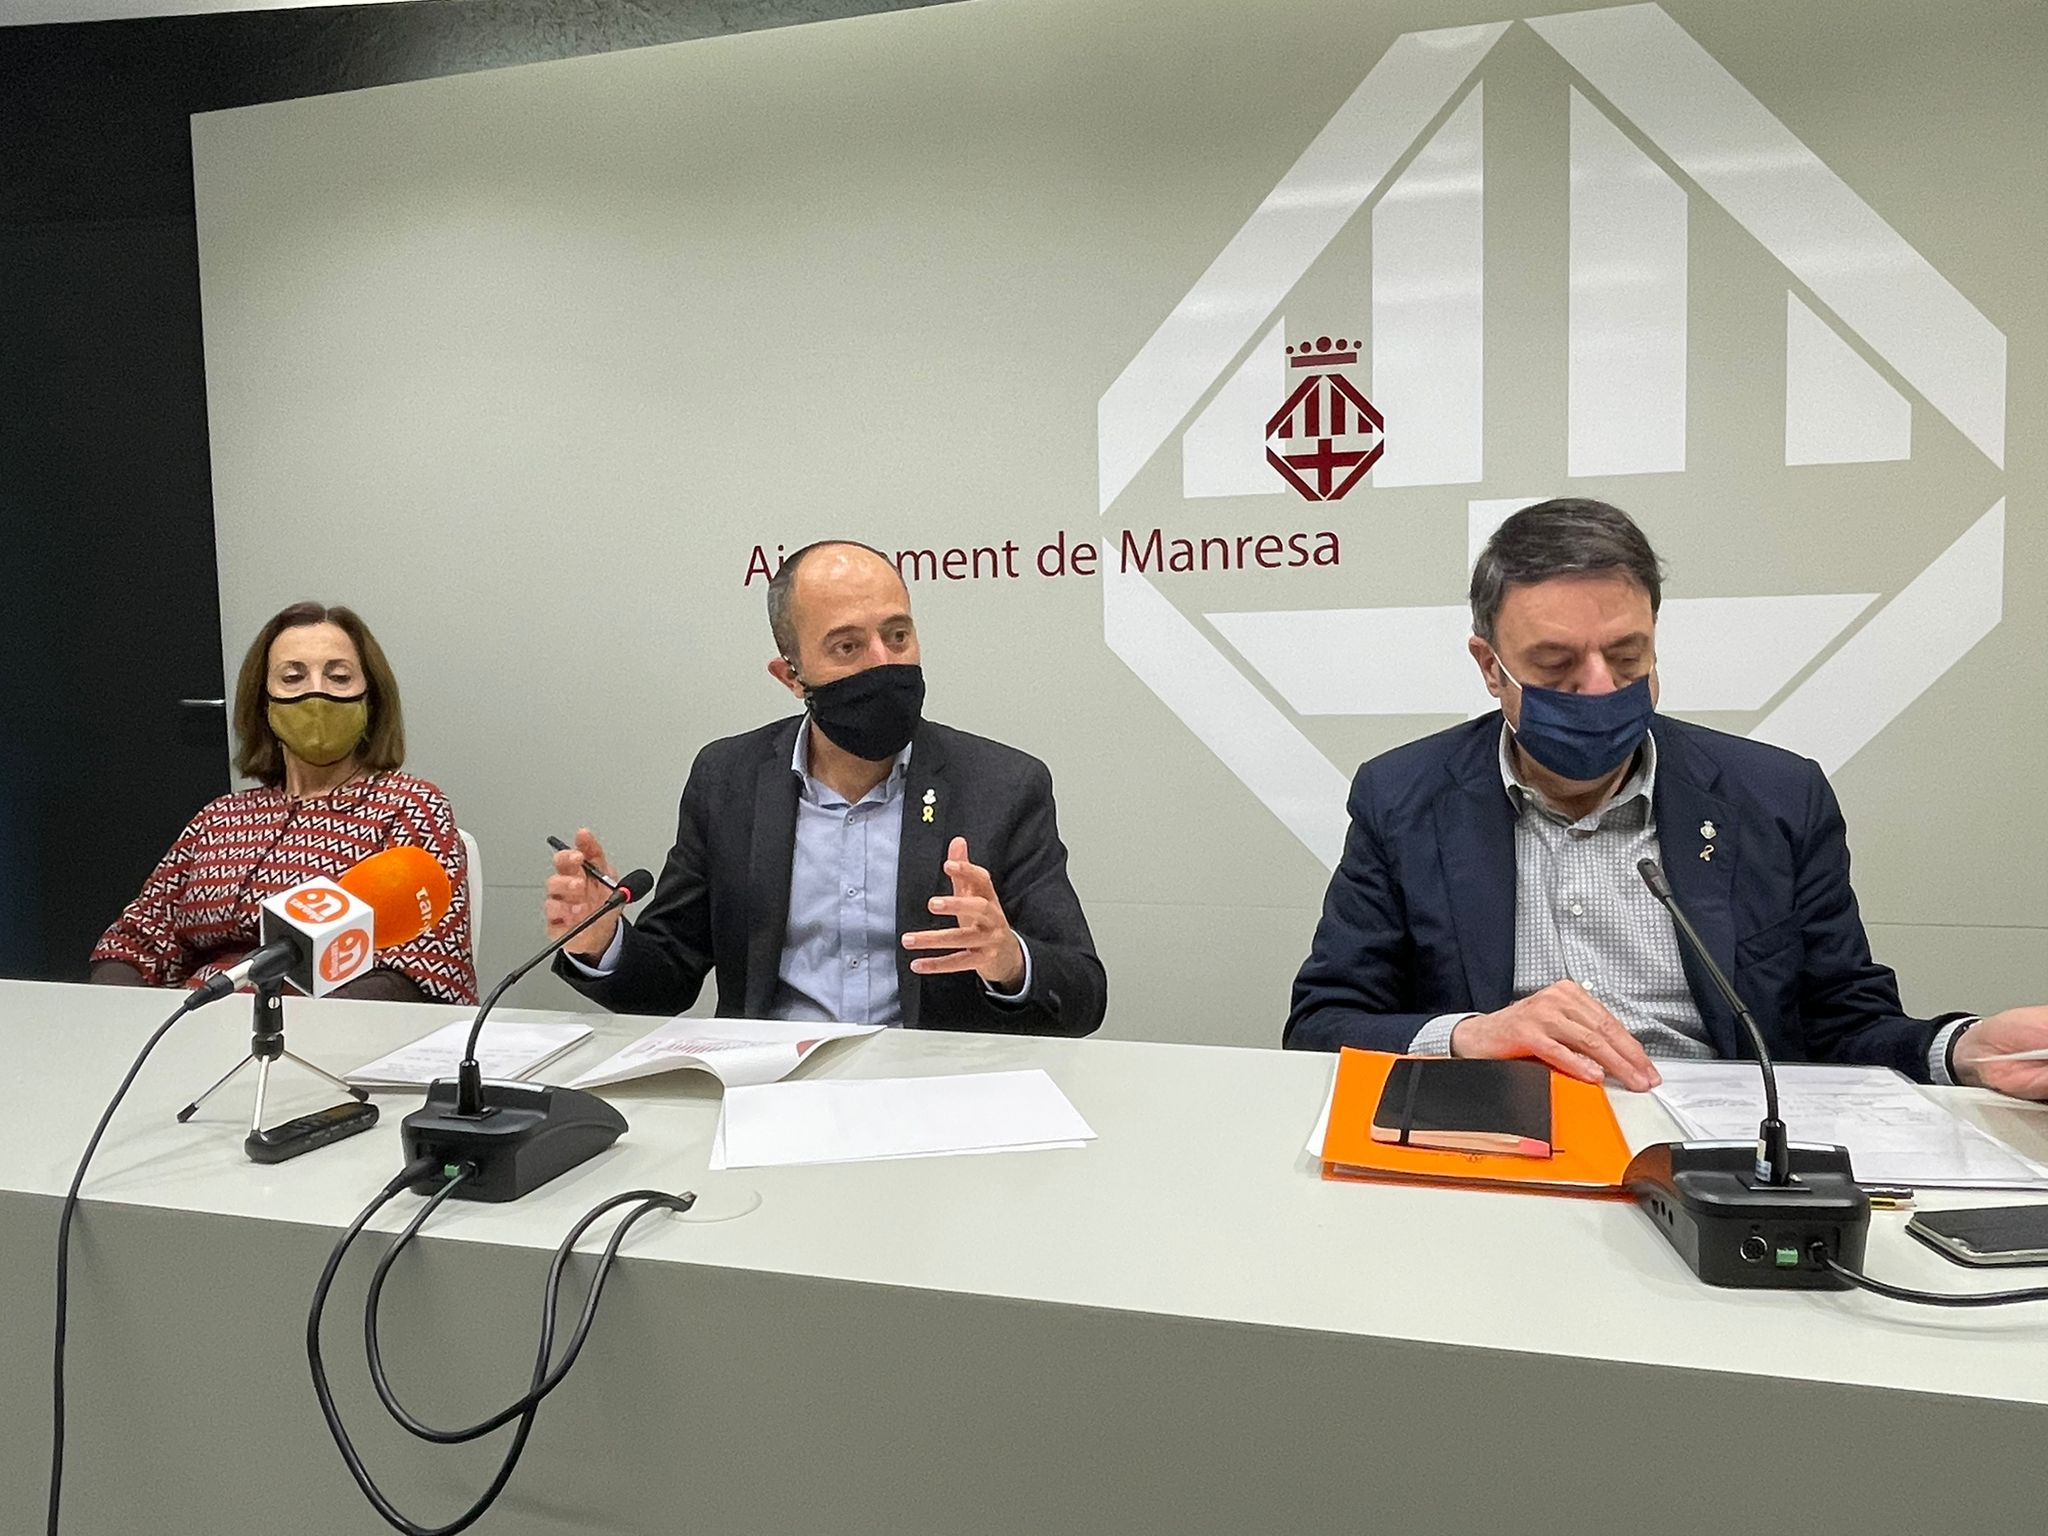 L'Ajuntament de Manresa tanca el 2020 amb números positius que permetran seguir donant resposta a les dificultats econòmiques fruit de la pandèmia